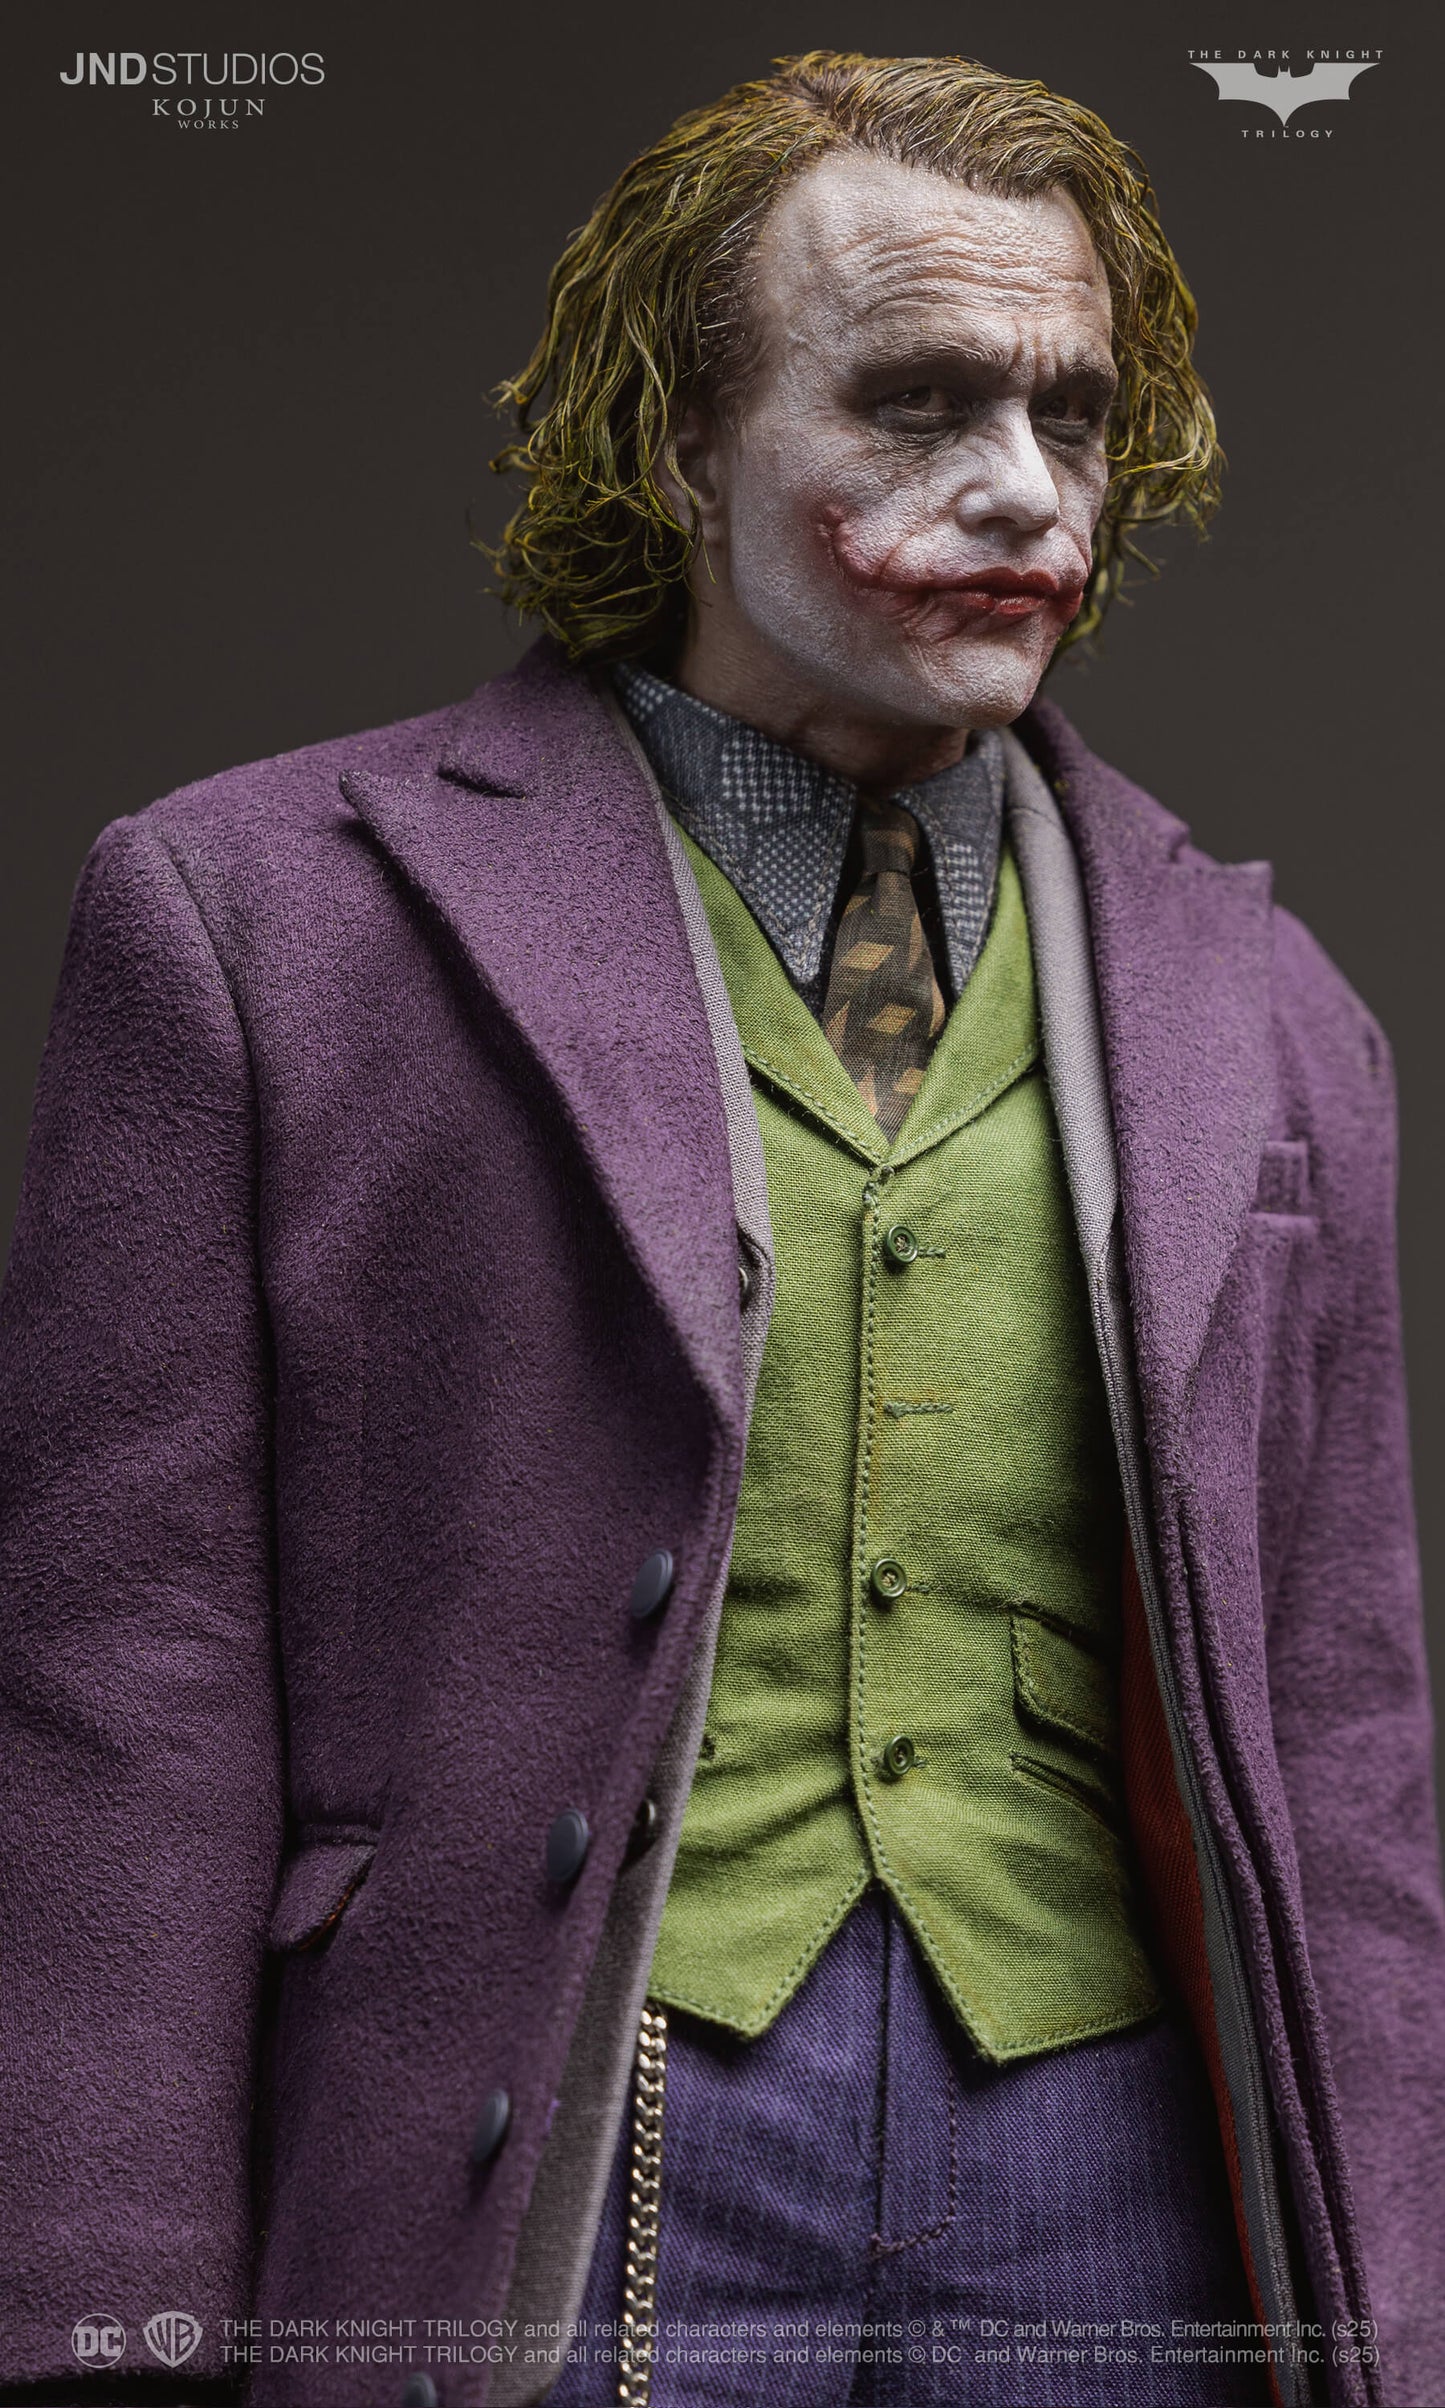 1:6 JND The Joker: version A